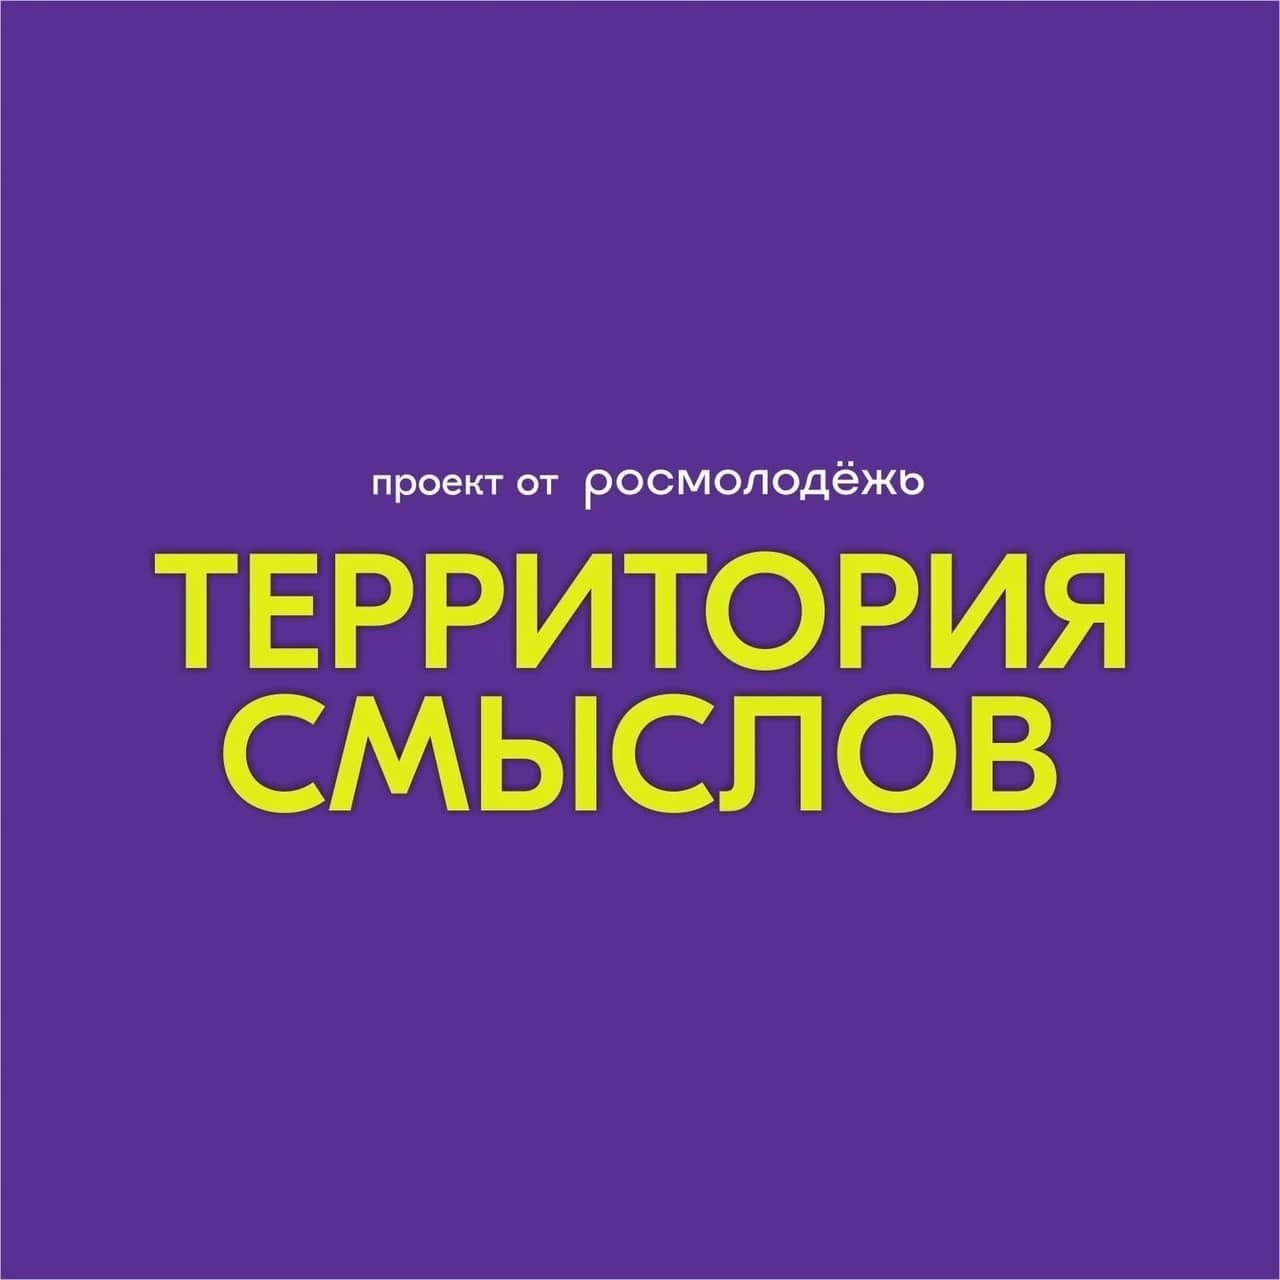 Всероссийский форум «Территория смыслов»